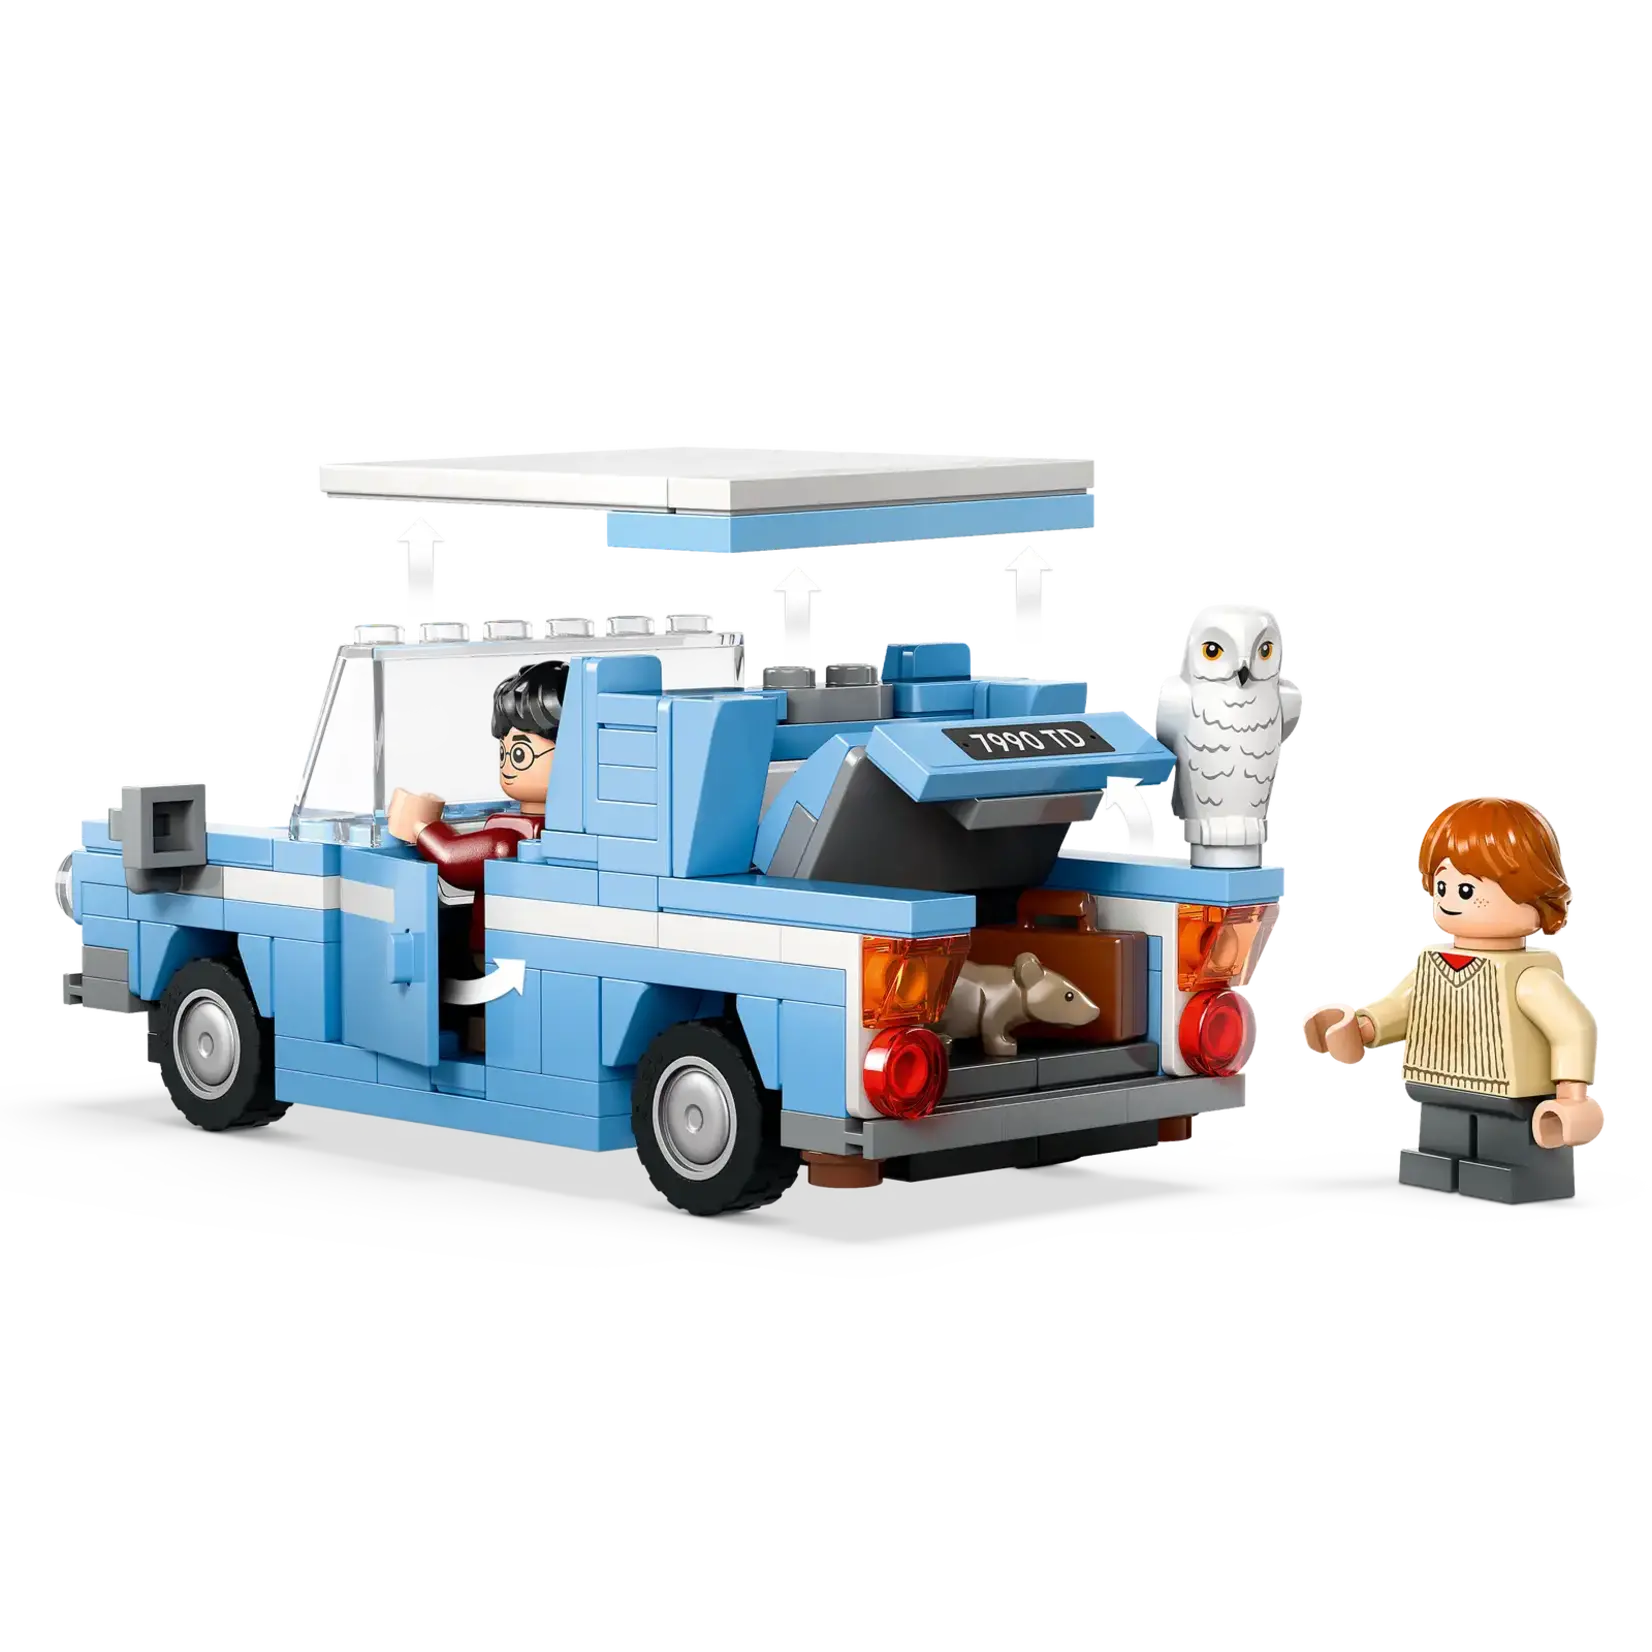 LEGO LEGO Harry Potter Vliegende Ford Anglia (76424)